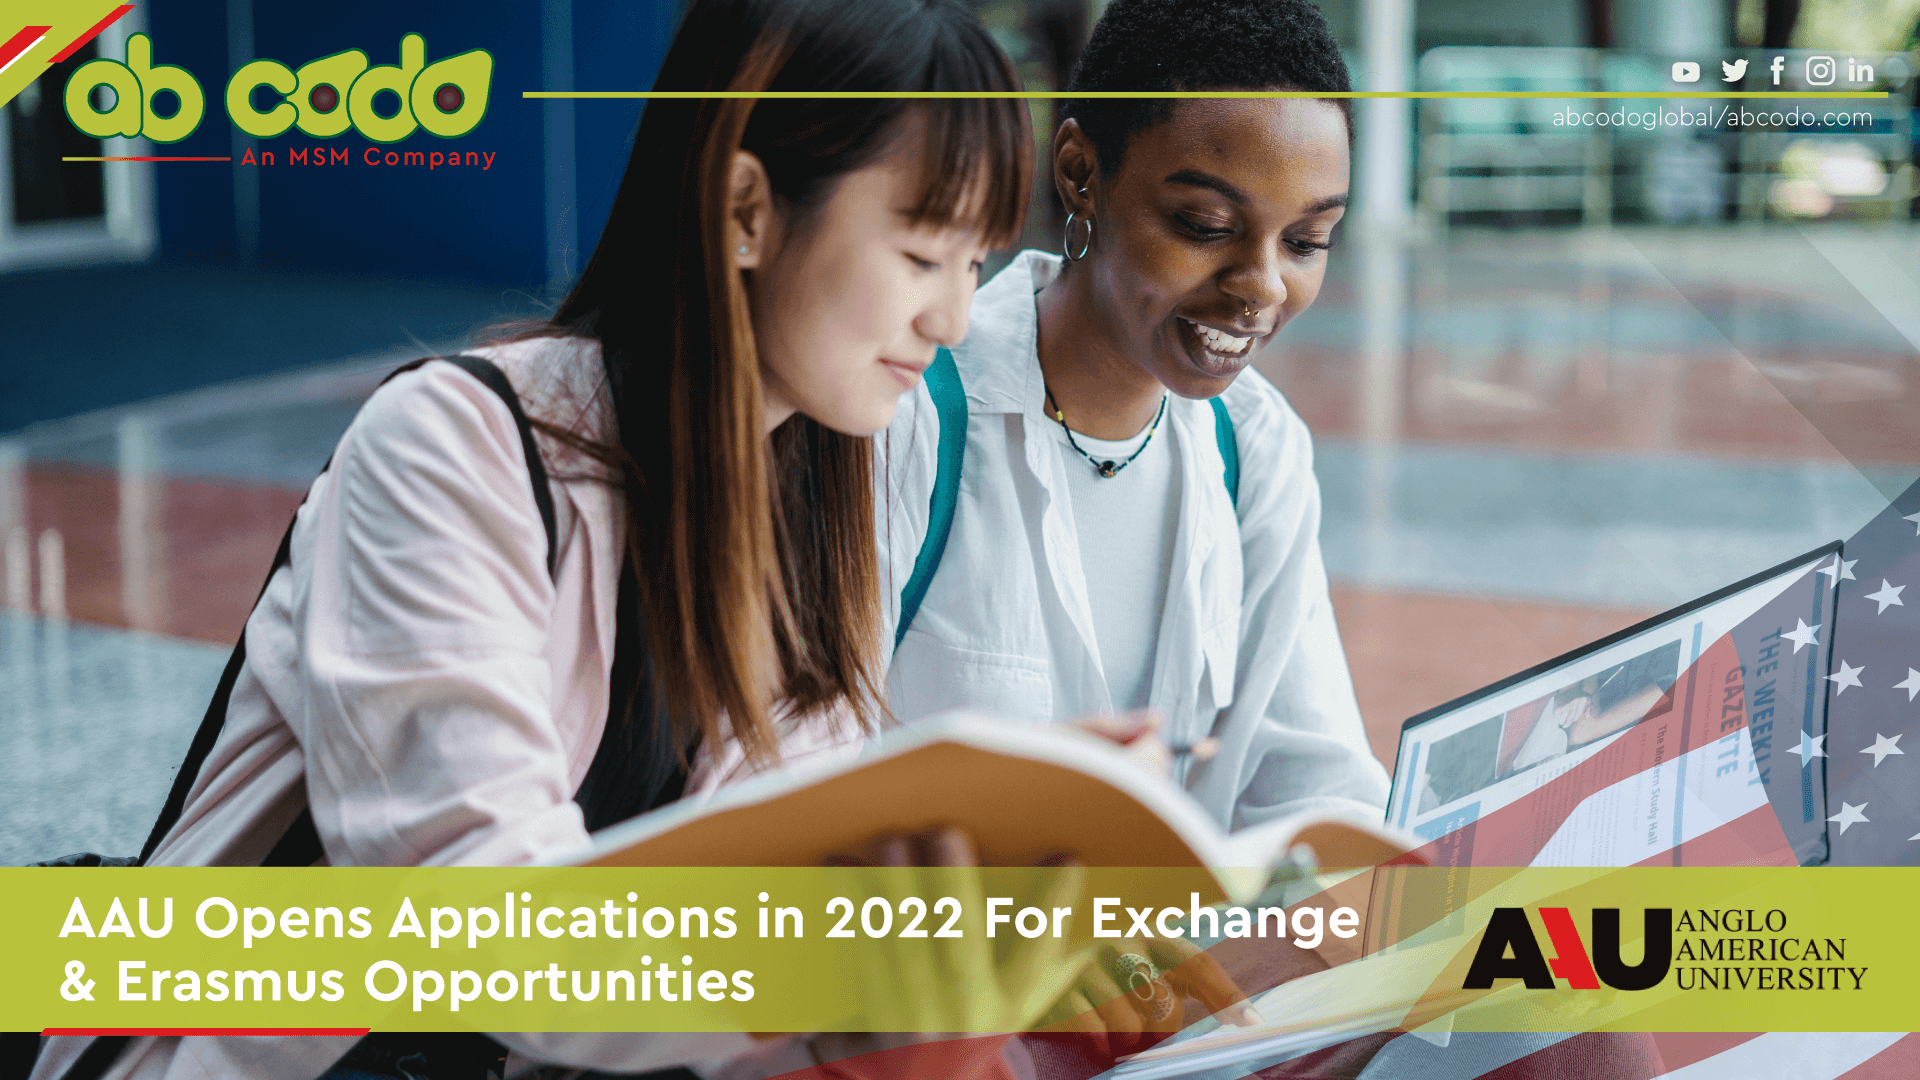 AAU Opens Applications in 2022 For Exchange & Erasmus Opportunities